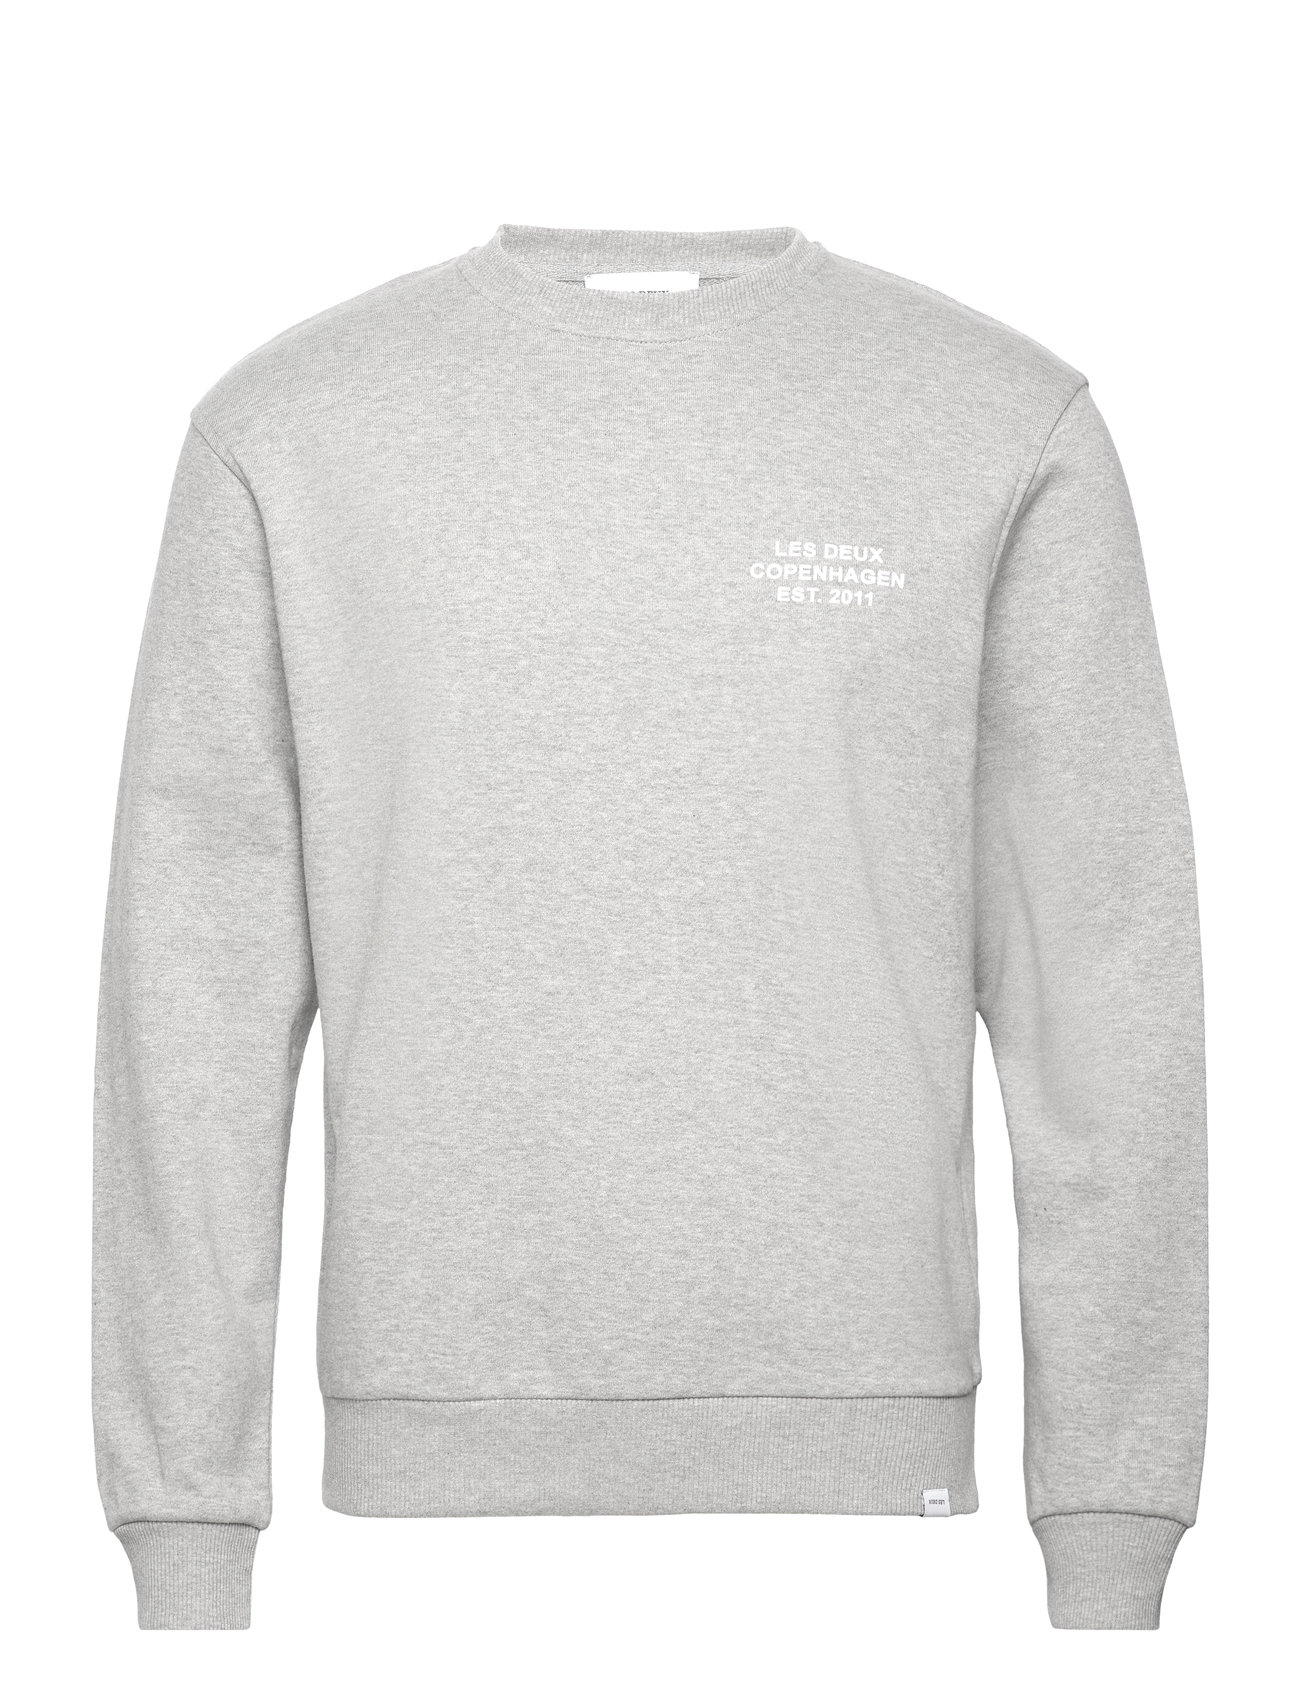 Copenhagen 2011 Sweatshirt Tops Sweatshirts & Hoodies Sweatshirts Grey Les Deux